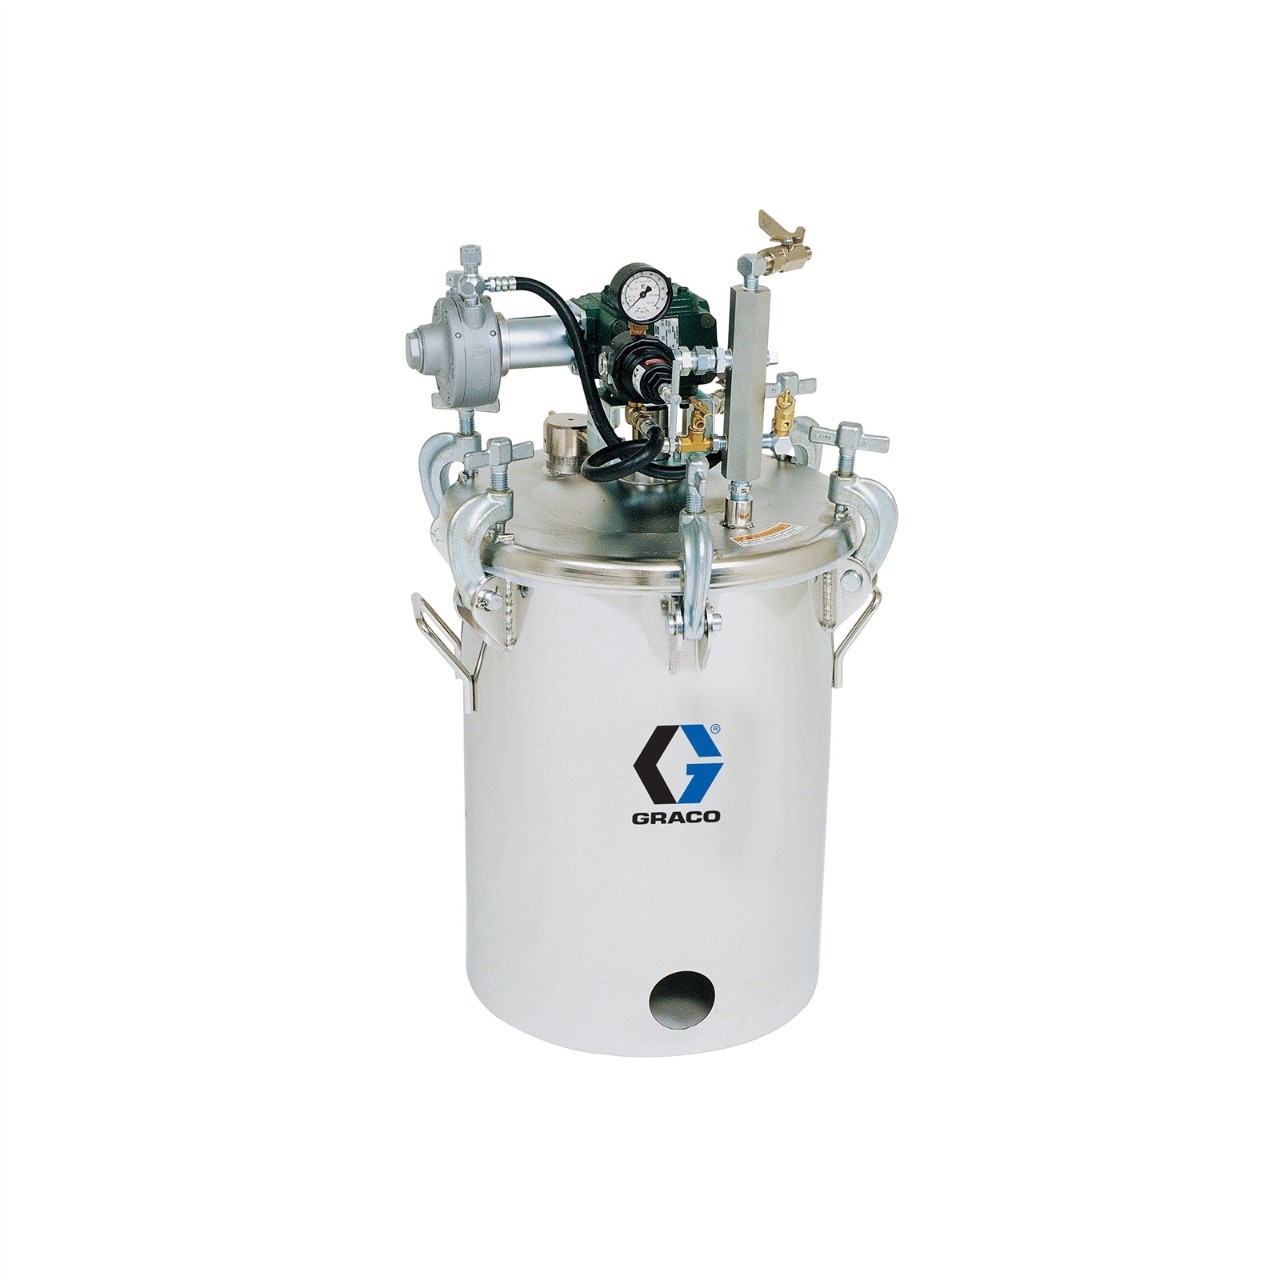 5-gallon pressure pot with agitator